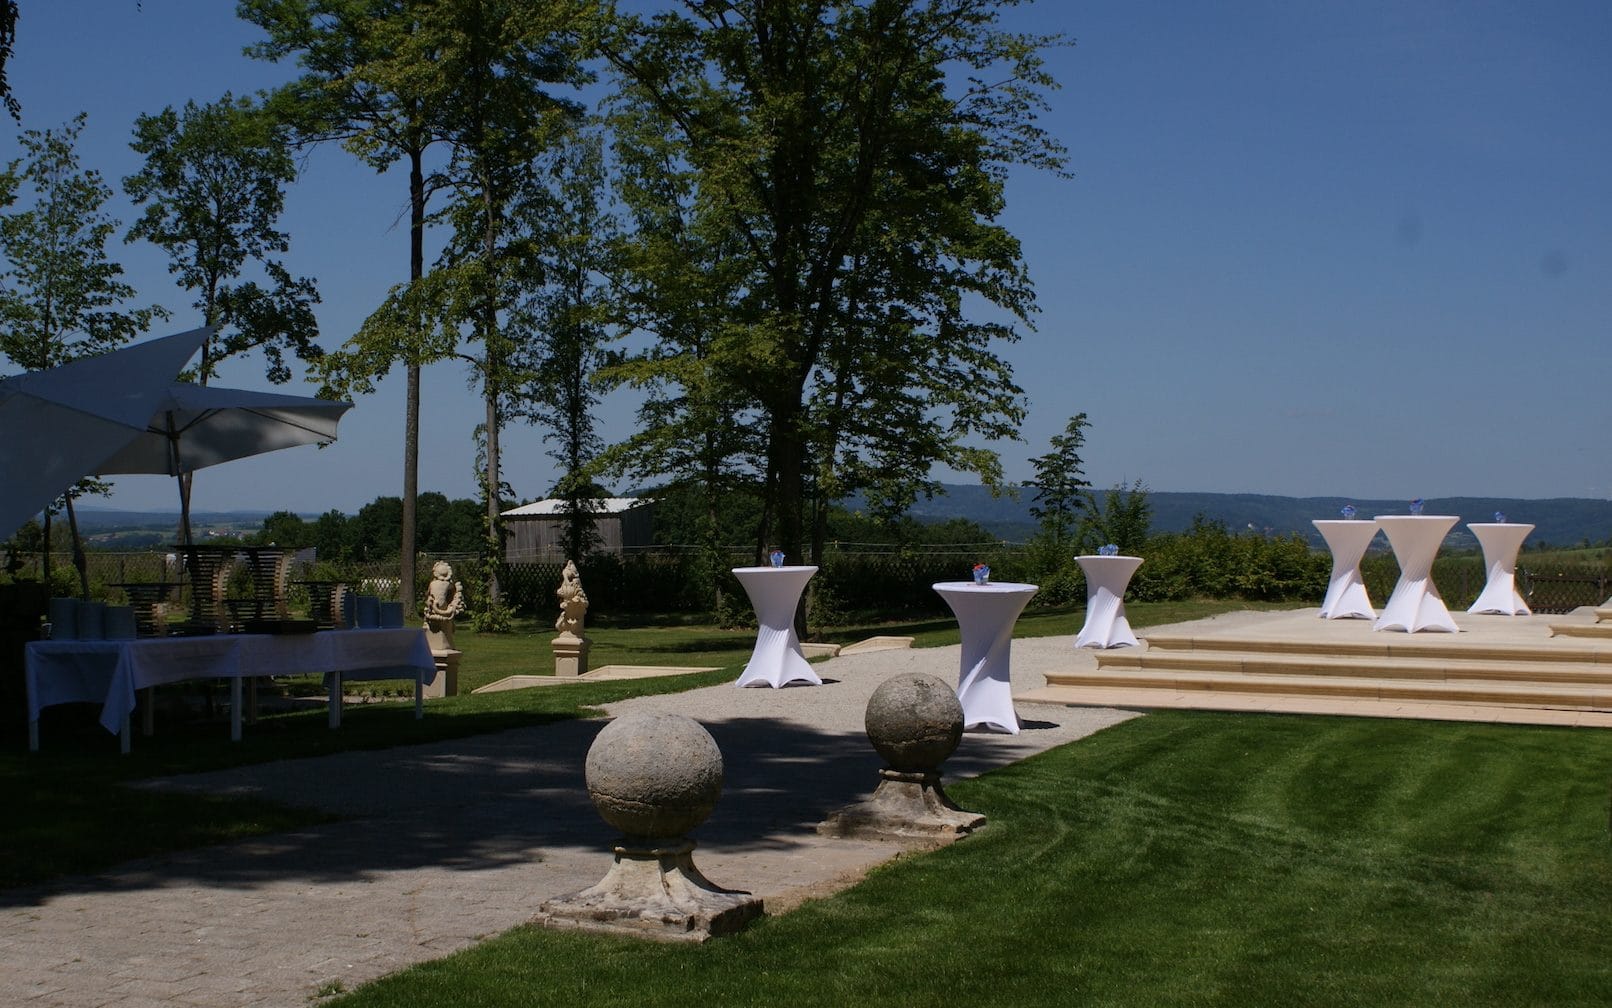 Schlossparkterasse im freien für geladene Gäste